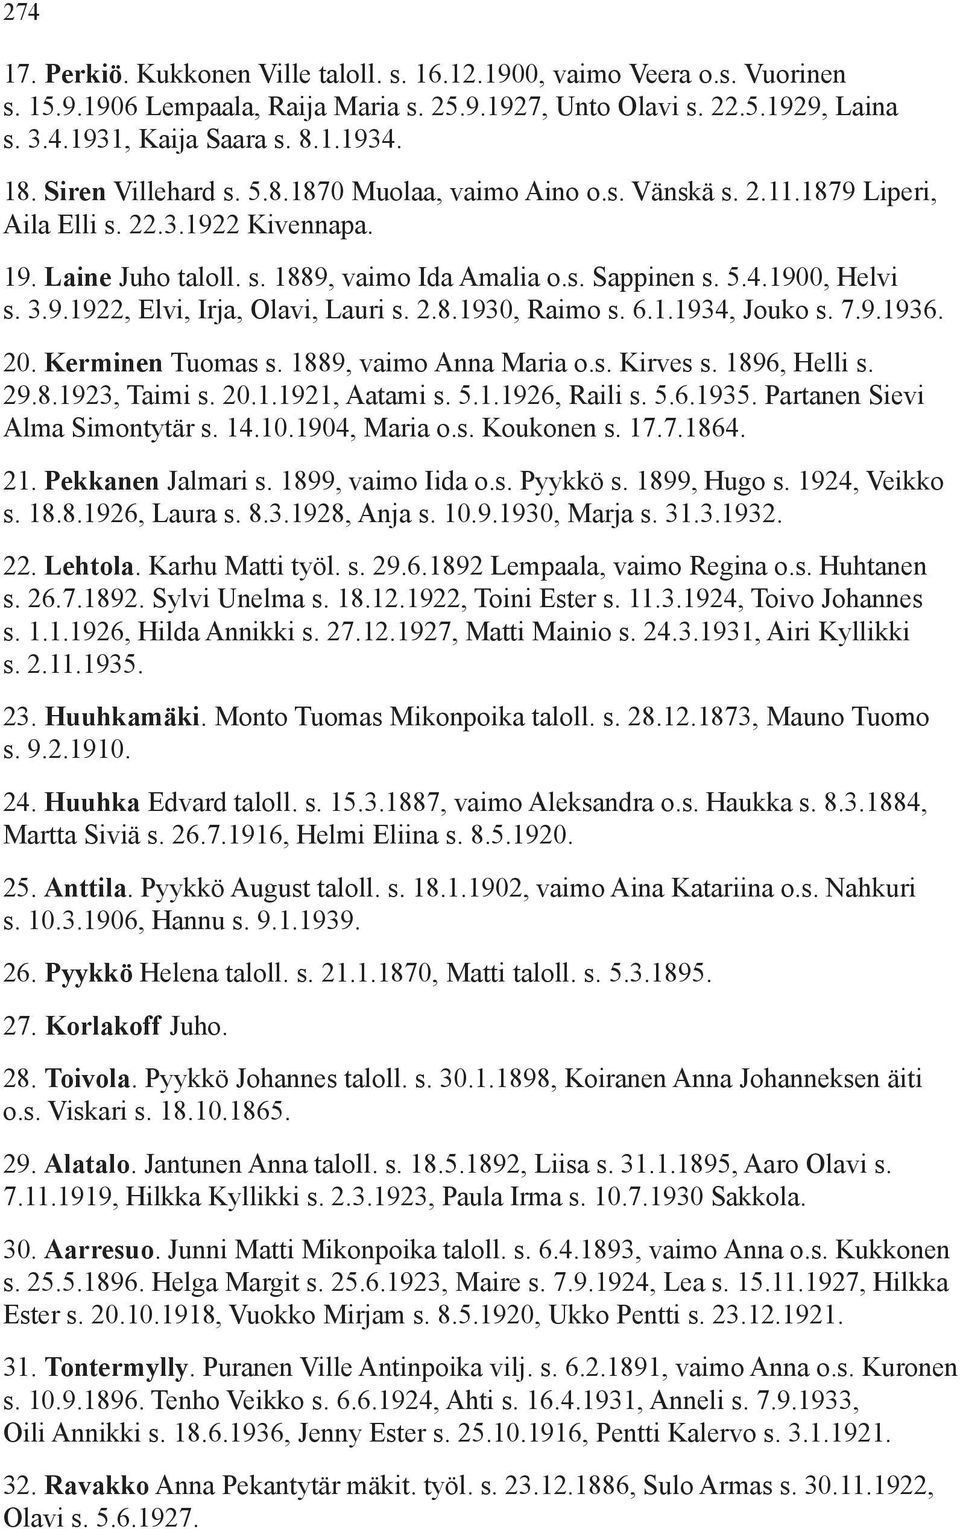 1900, Helvi s. 3.9.1922, Elvi, Irja, Olavi, Lauri s. 2.8.1930, Raimo s. 6.1.1934, Jouko s. 7.9.1936. 20. Kerminen Tuomas s. 1889, vaimo Anna Maria o.s. Kirves s. 1896, Helli s. 29.8.1923, Taimi s. 20.1.1921, Aatami s.